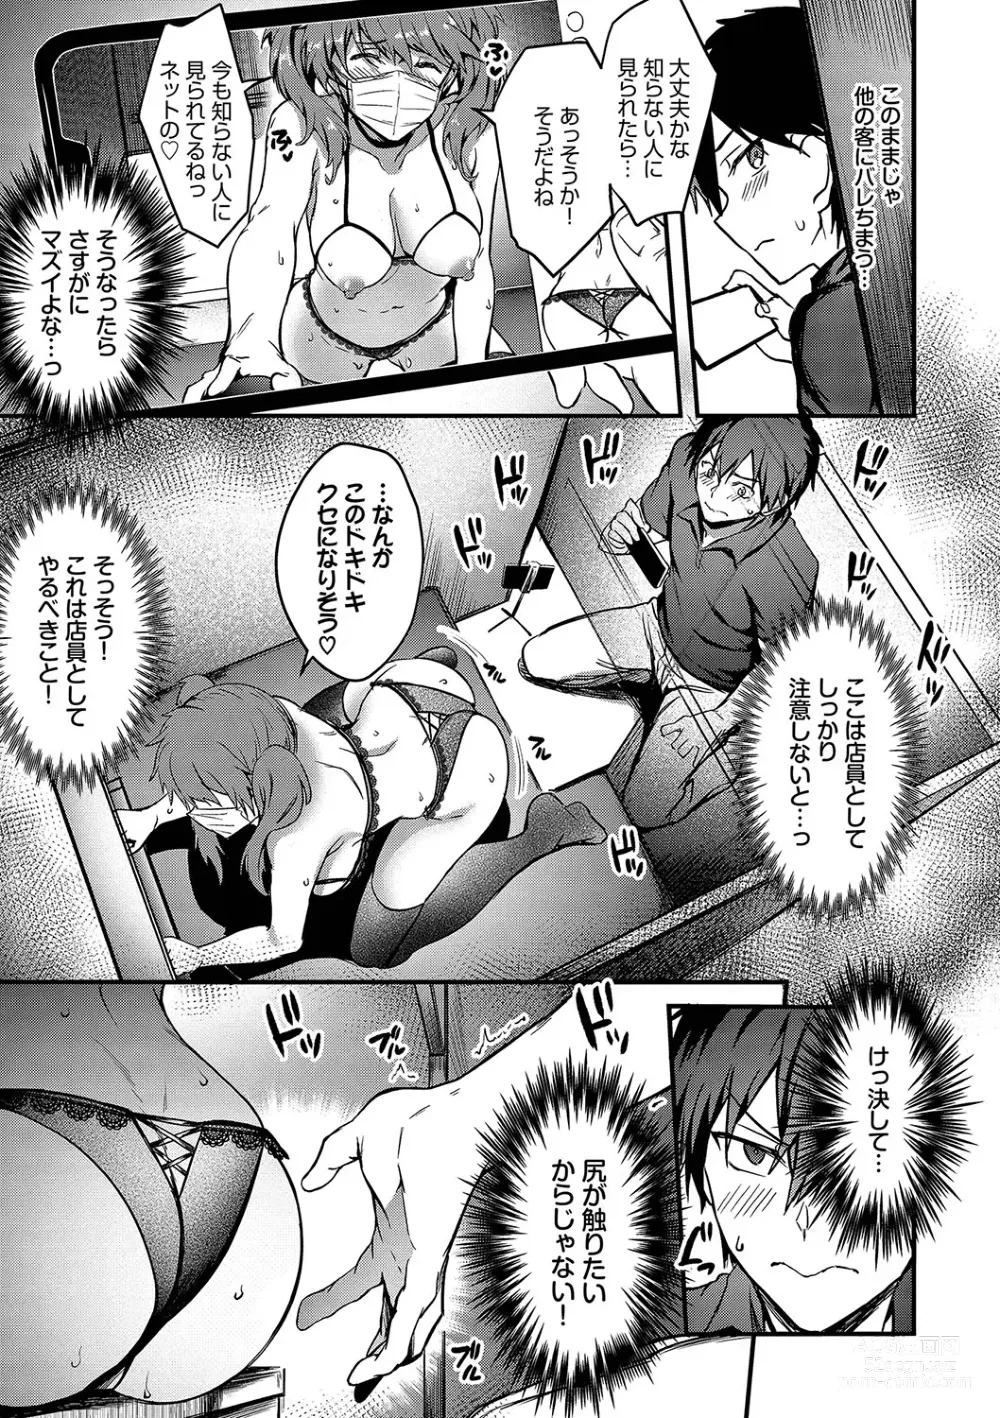 Page 12 of manga Bitch Bitch